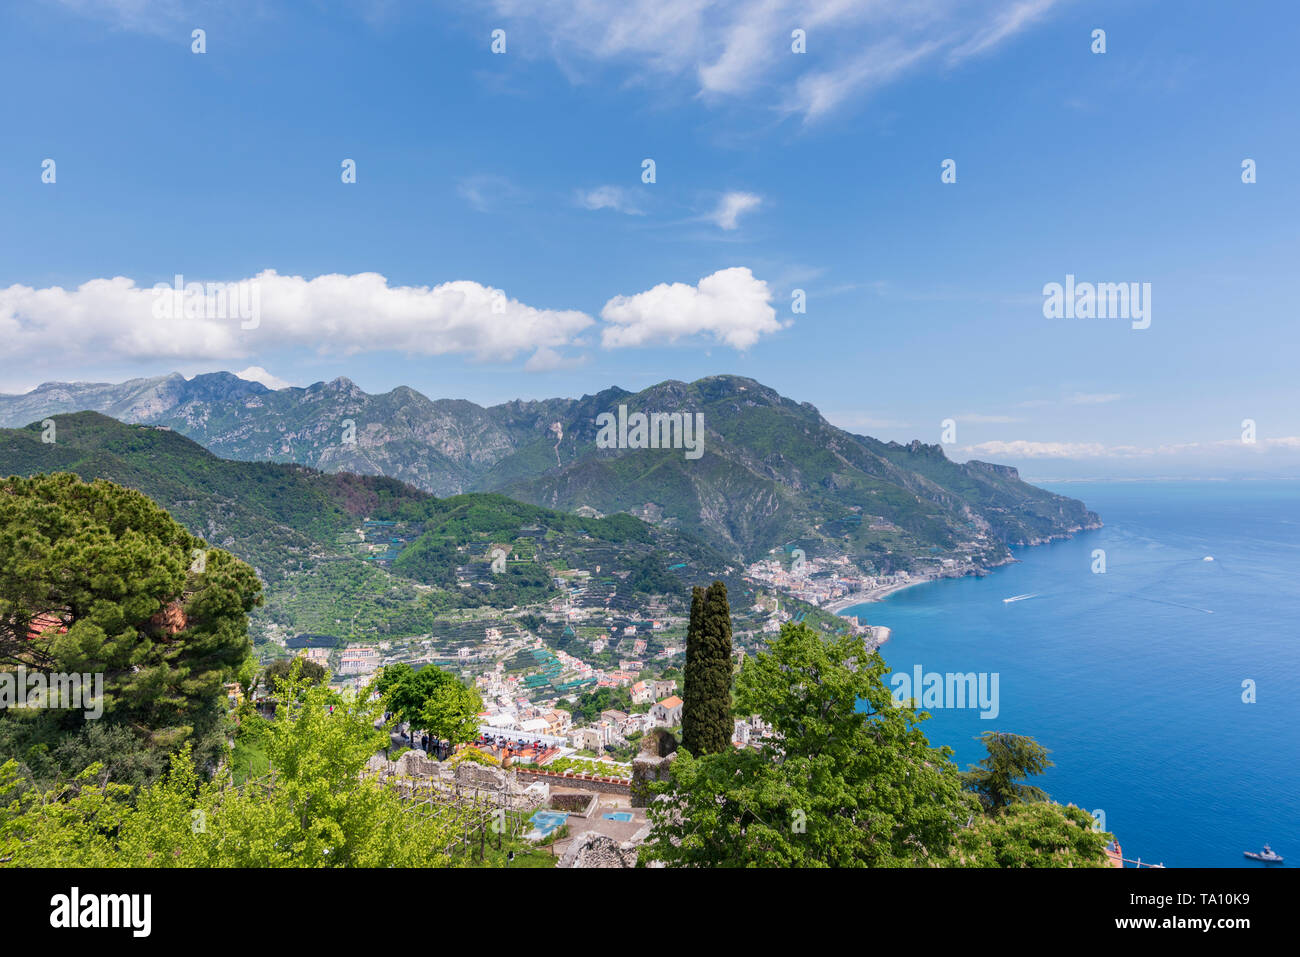 Vista desde los jardines de Villa Rufolo de Ravello con vistas a la Costa Amalfitana y el Golfo de Salerno, en Campania, Sur de Italia Foto de stock